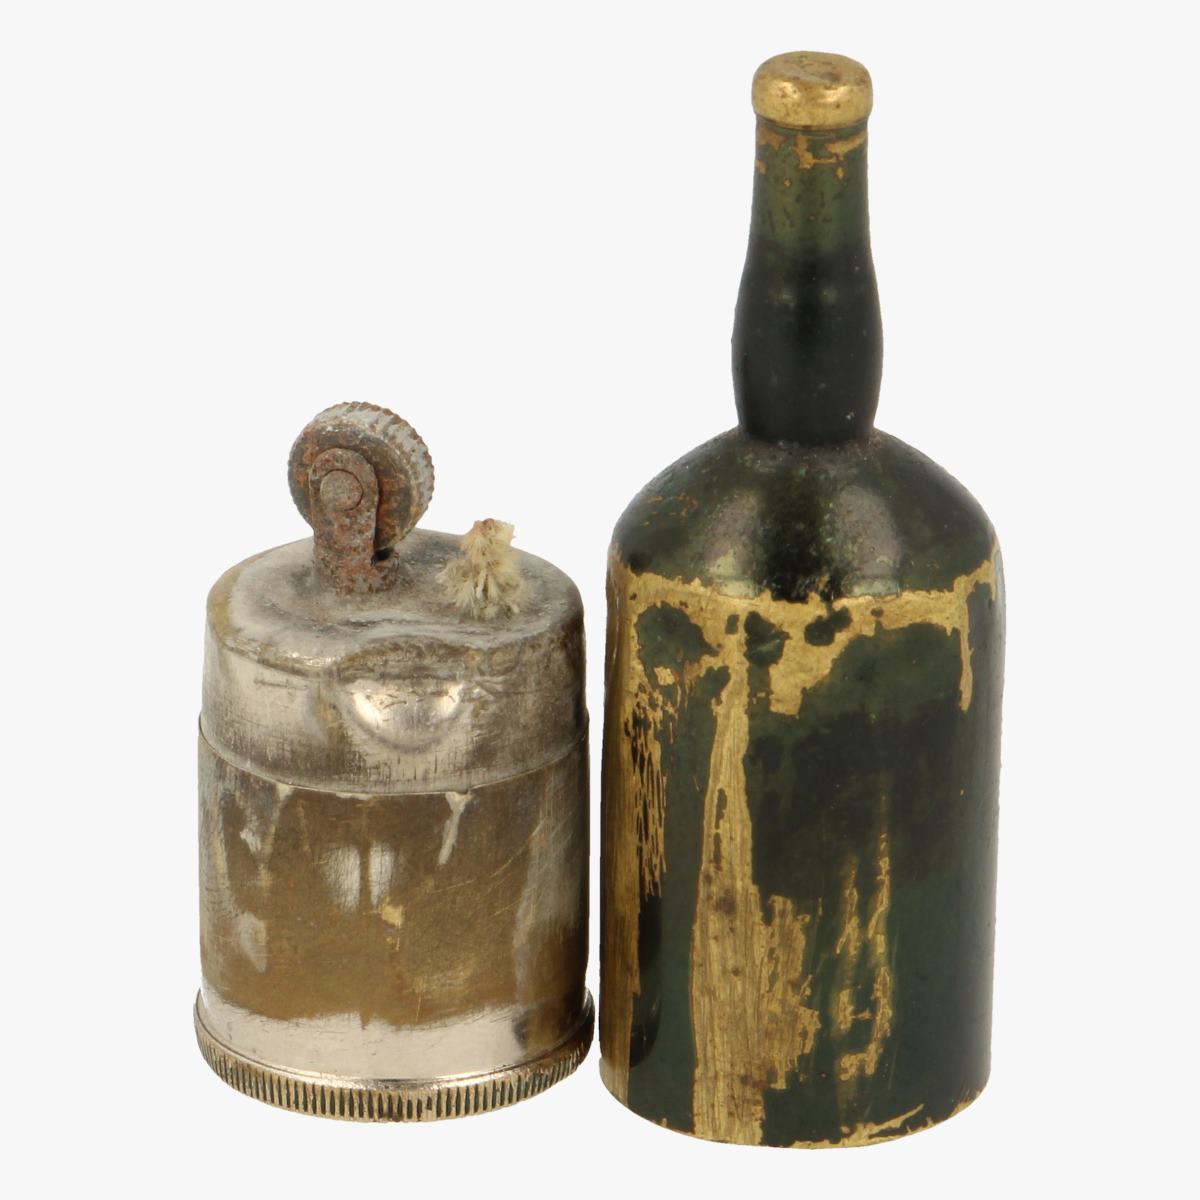 Afbeeldingen van oude aansteker flesje